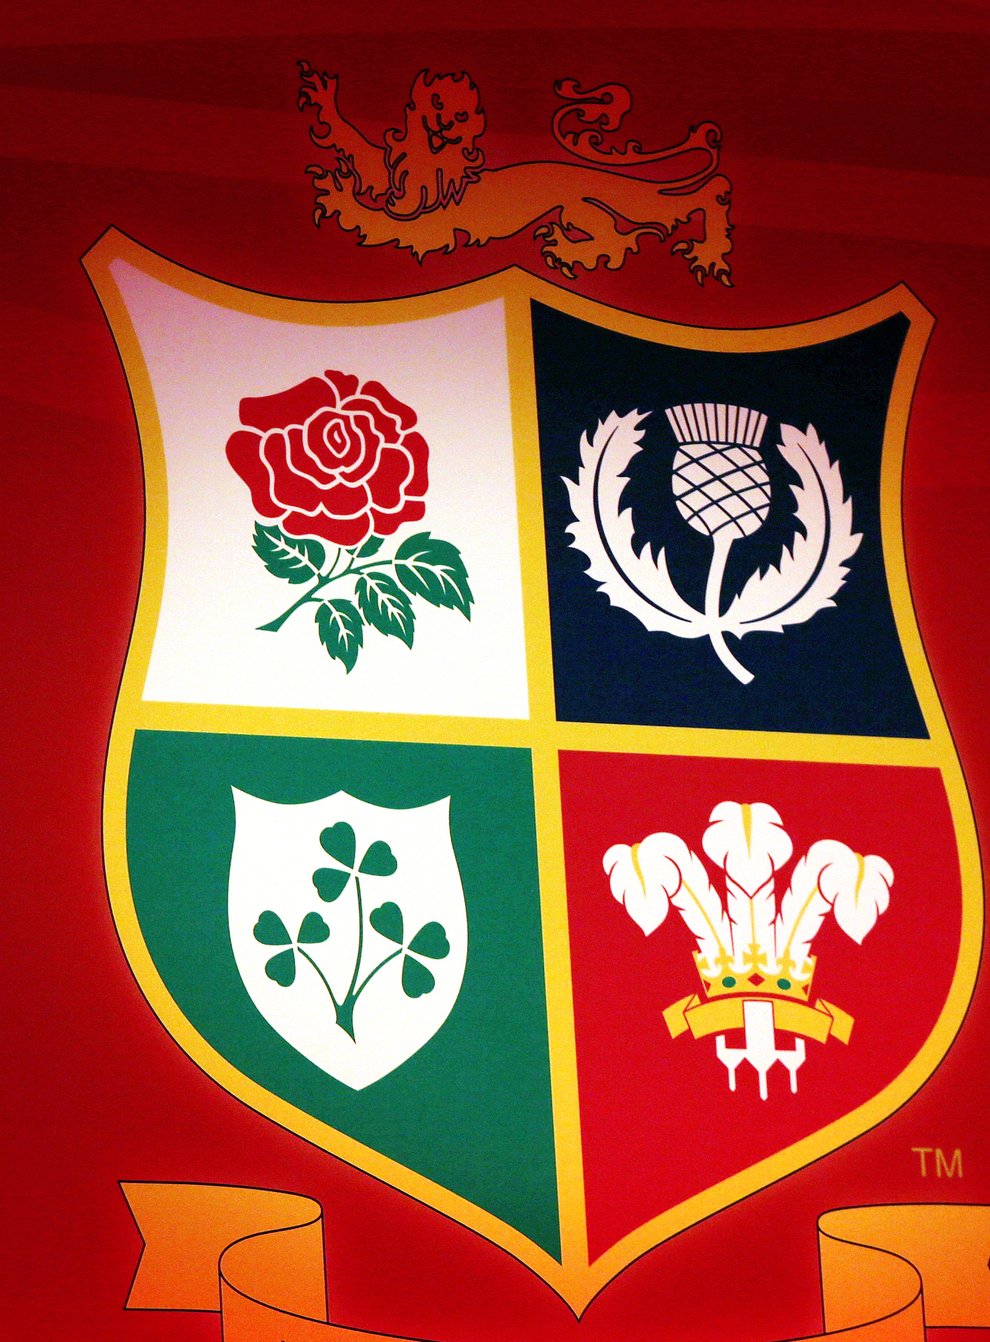 The British and Irish Lions logo